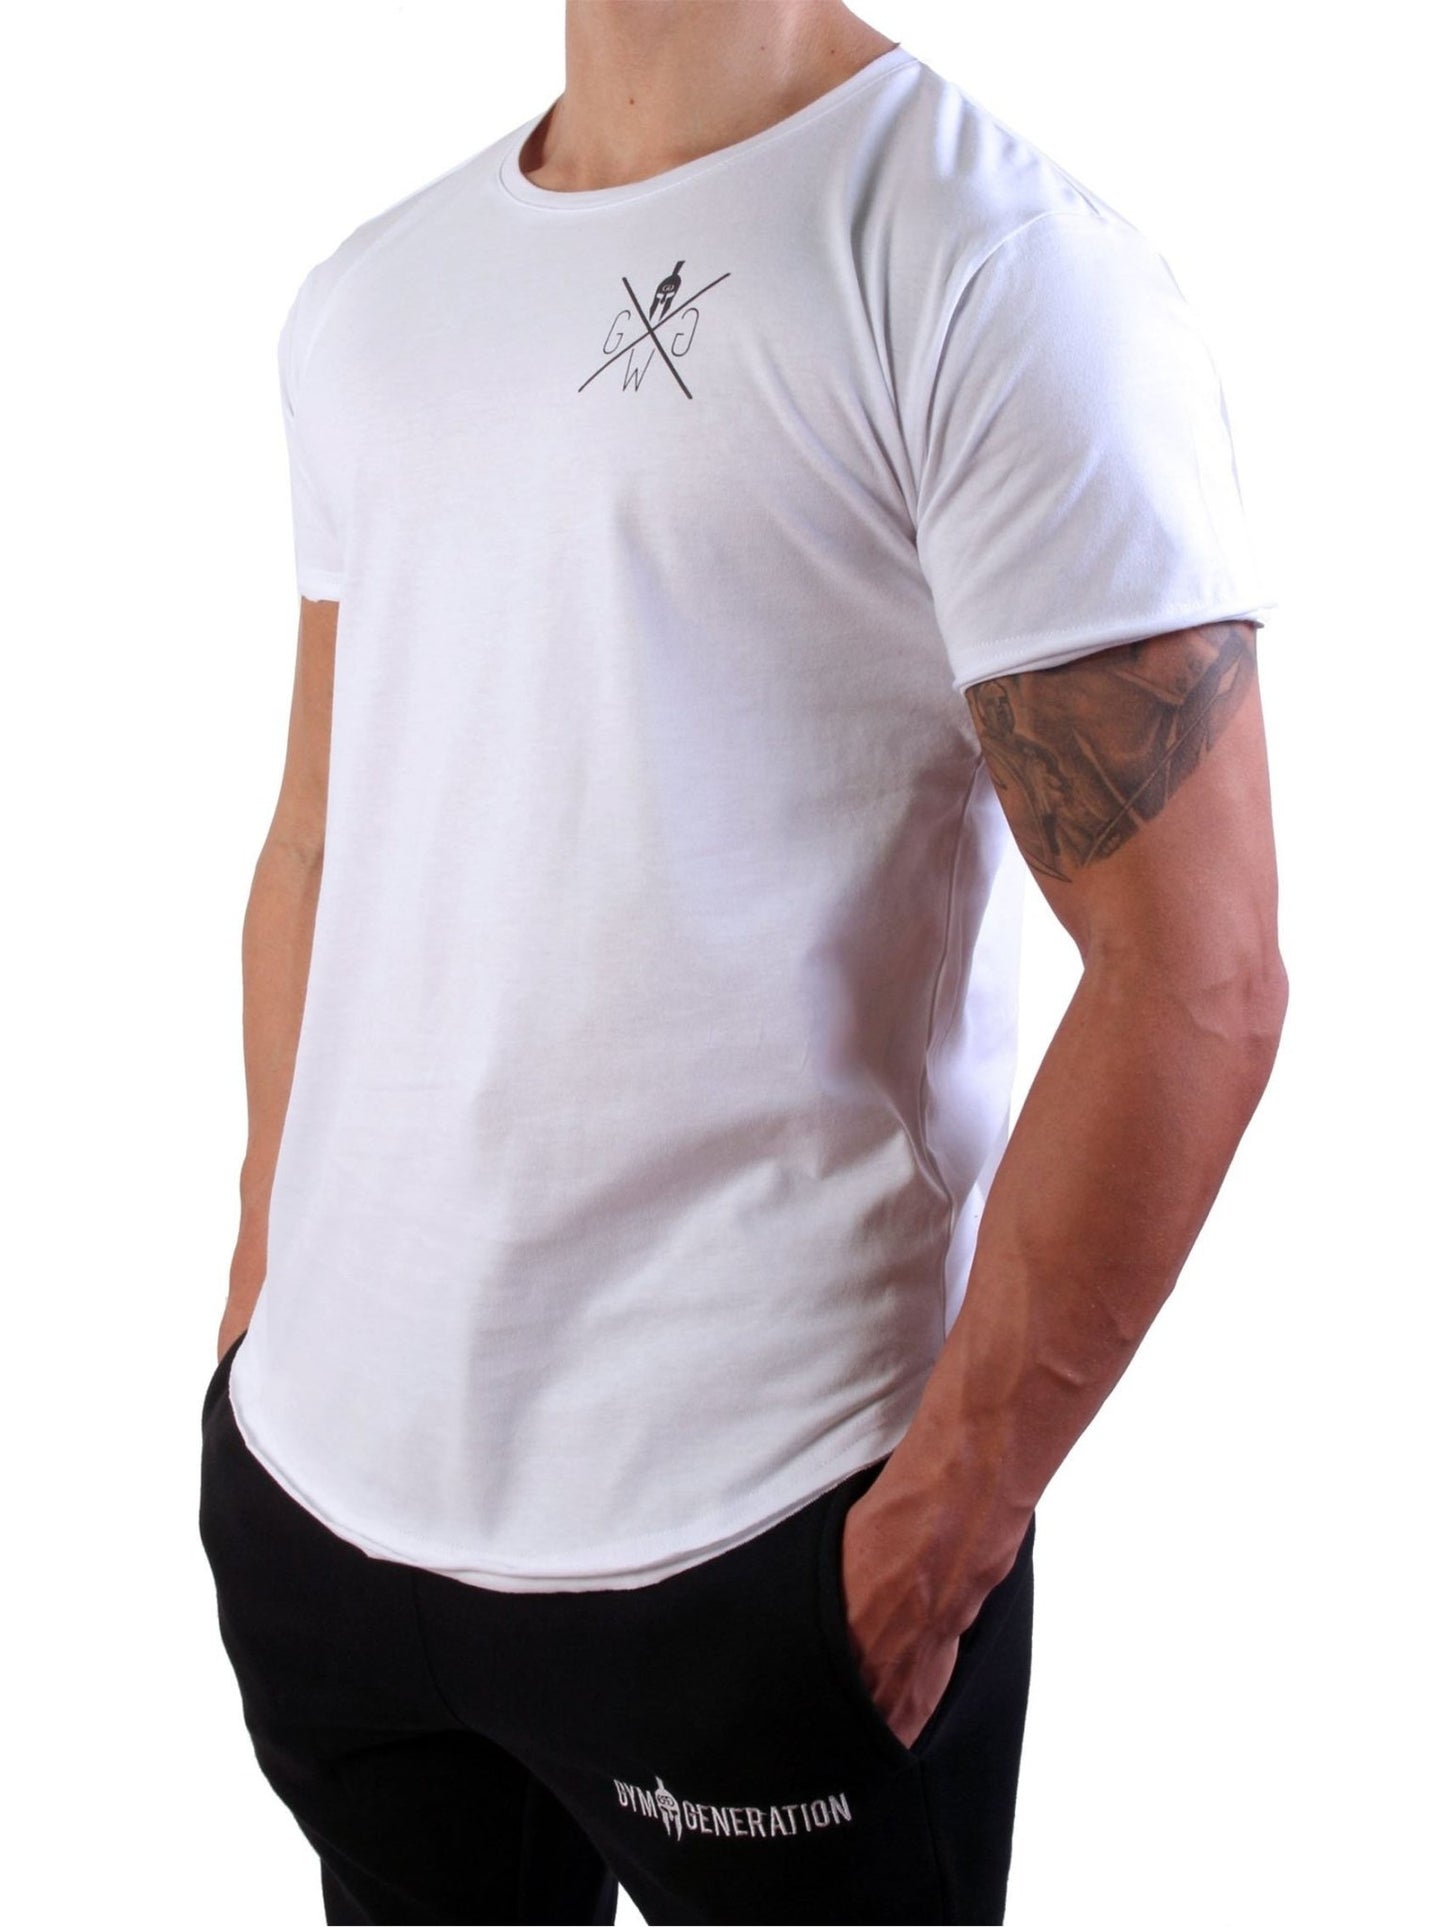 Hochwertiges weißes Gym T-Shirt aus Baumwolle mit stilvollem Spartaner-Logo für Herren.